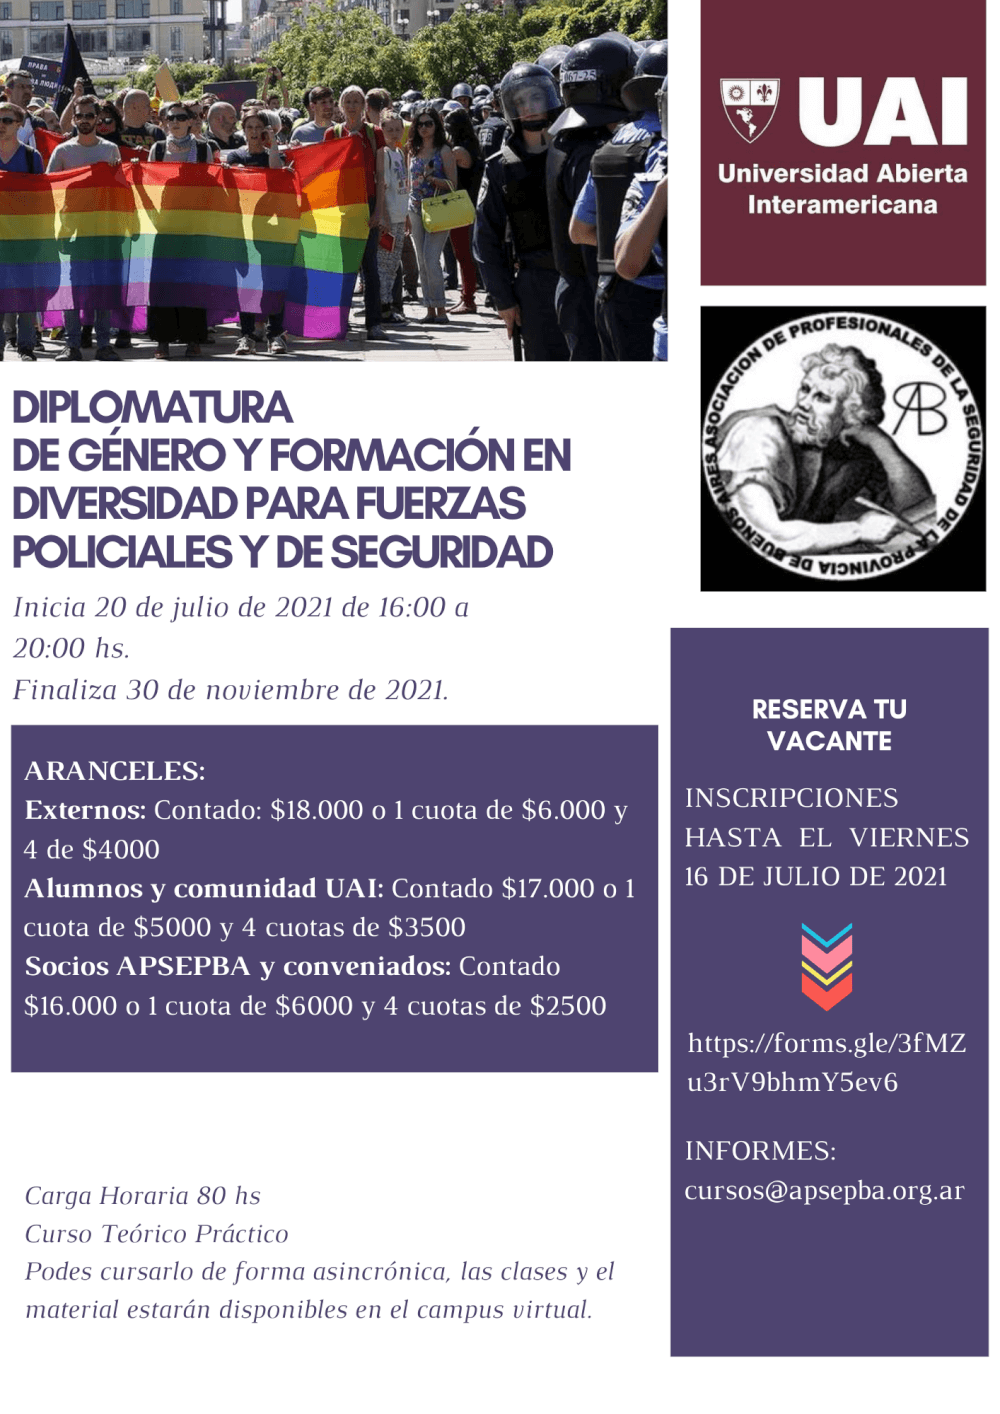 Diplomatura UAI-APSEPBA de Género y Formación en Diversidad para Fuerzas Policiales y de Seguridad